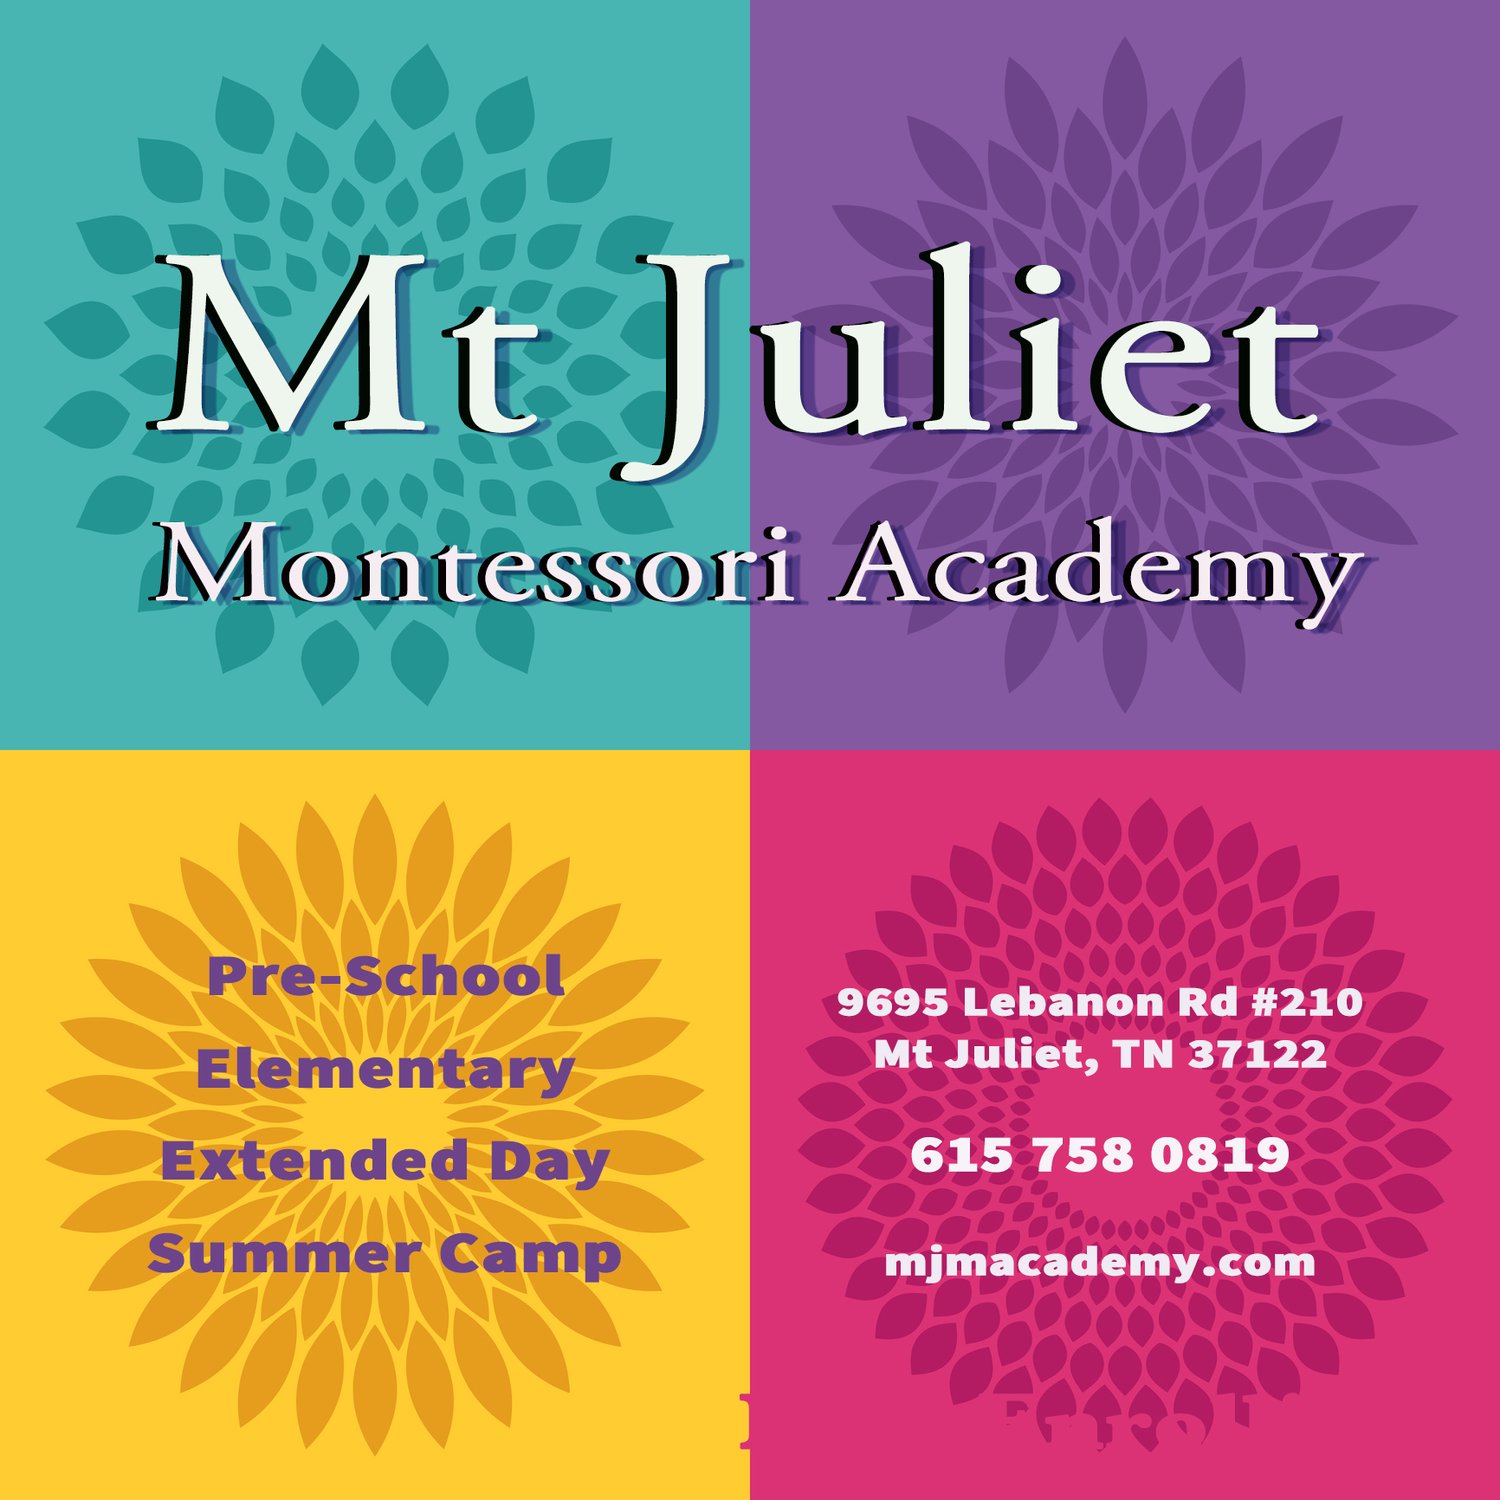 Mt. Juliet Montessori Academy